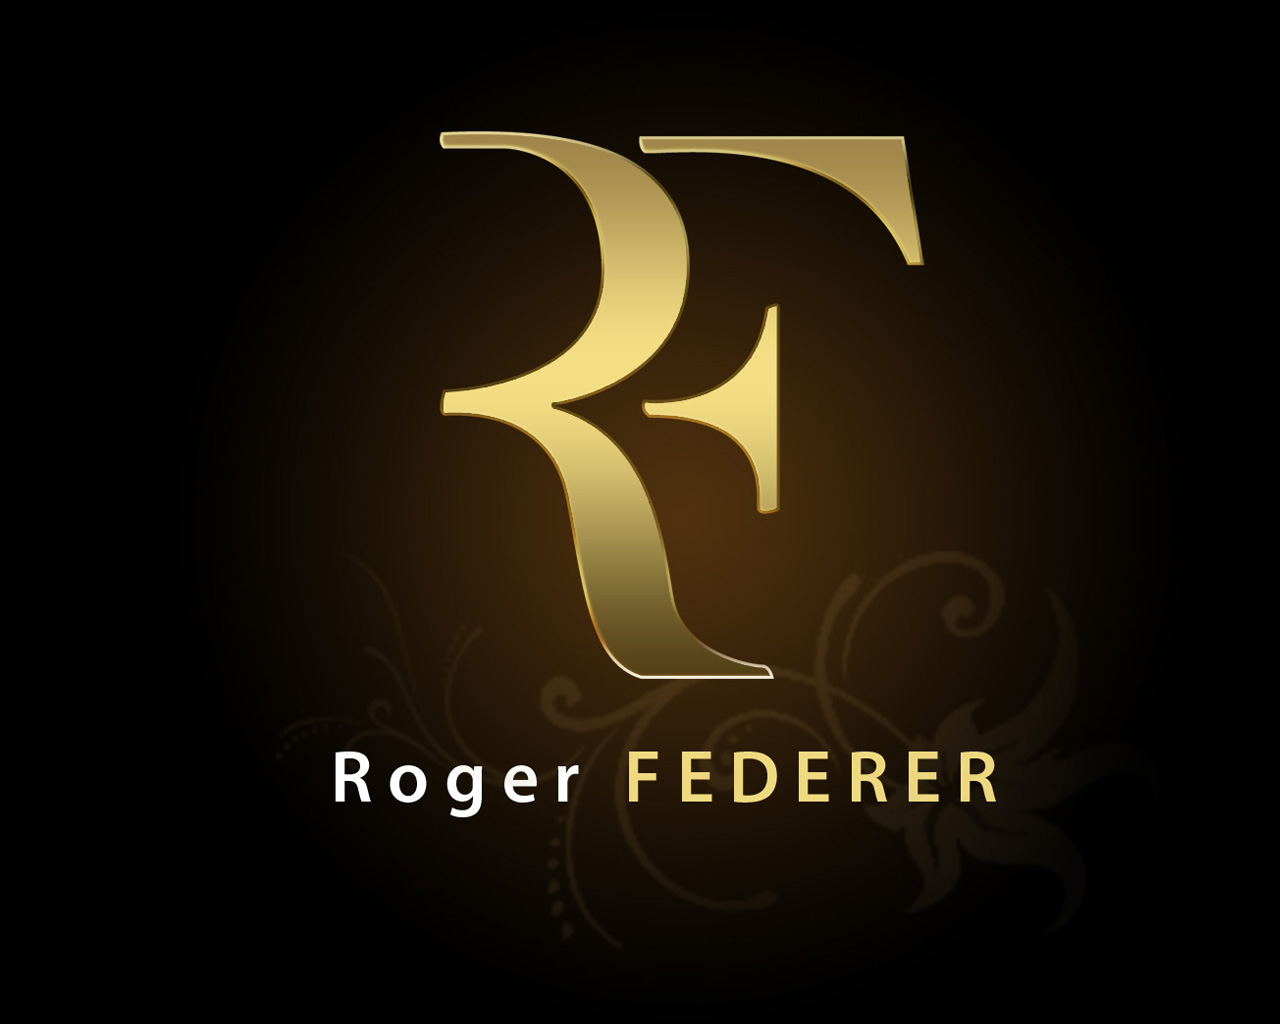 Roger federer logo Wallpaper